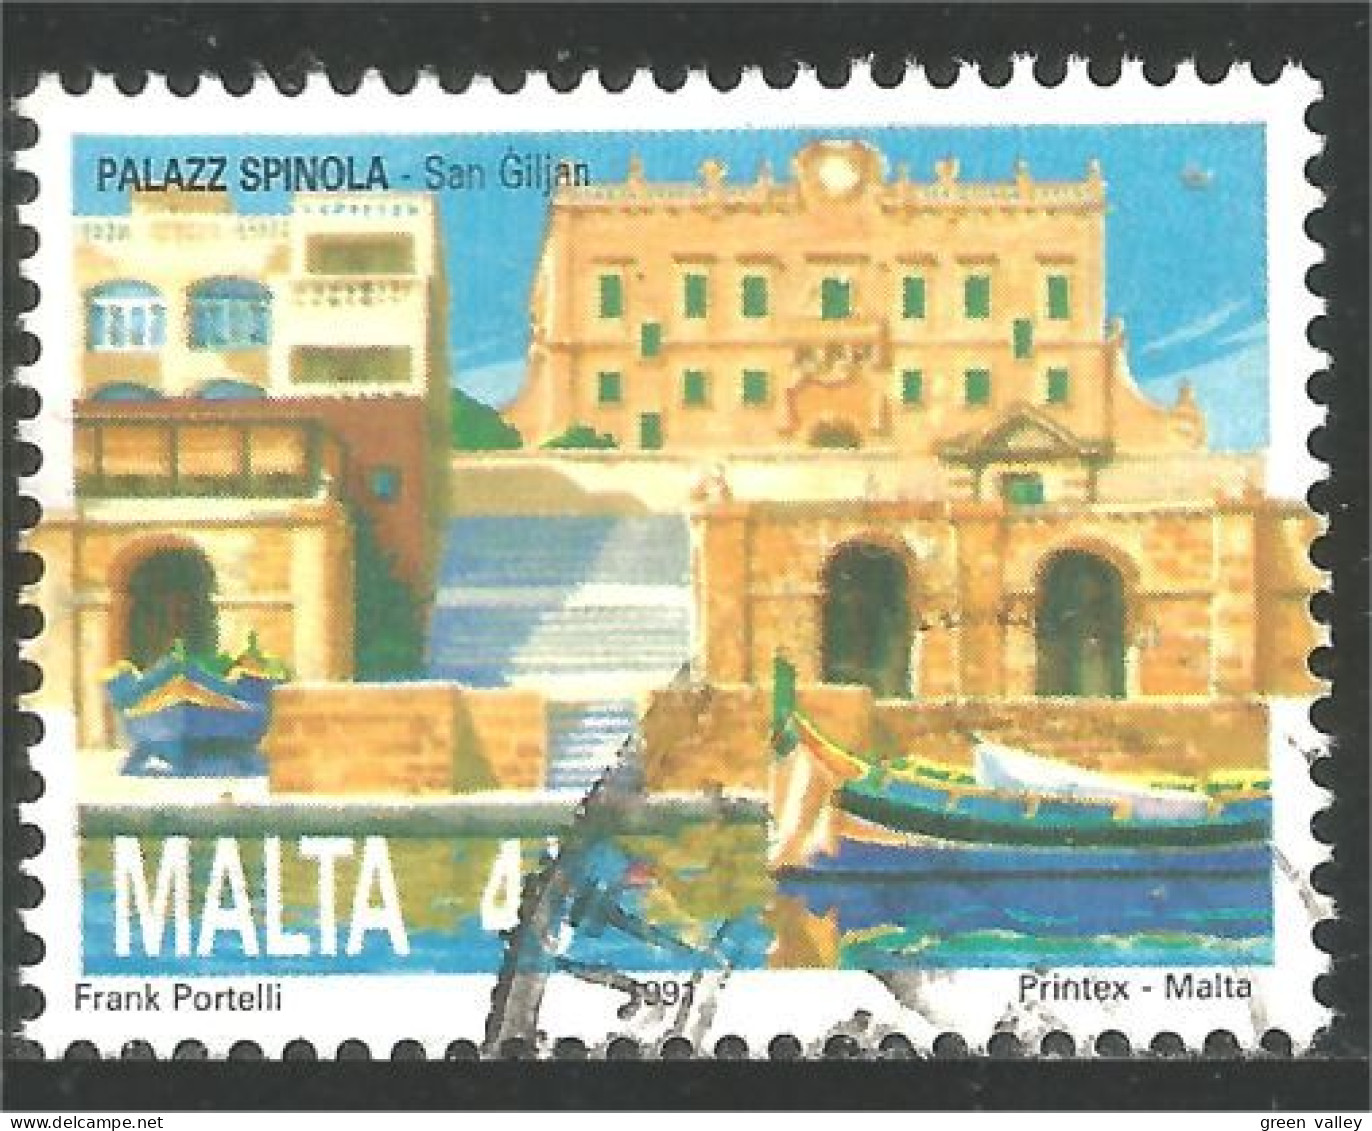 589 Malta Malte Valletta La Vallette Palais Spinola Palace (MLT-192) - Malte